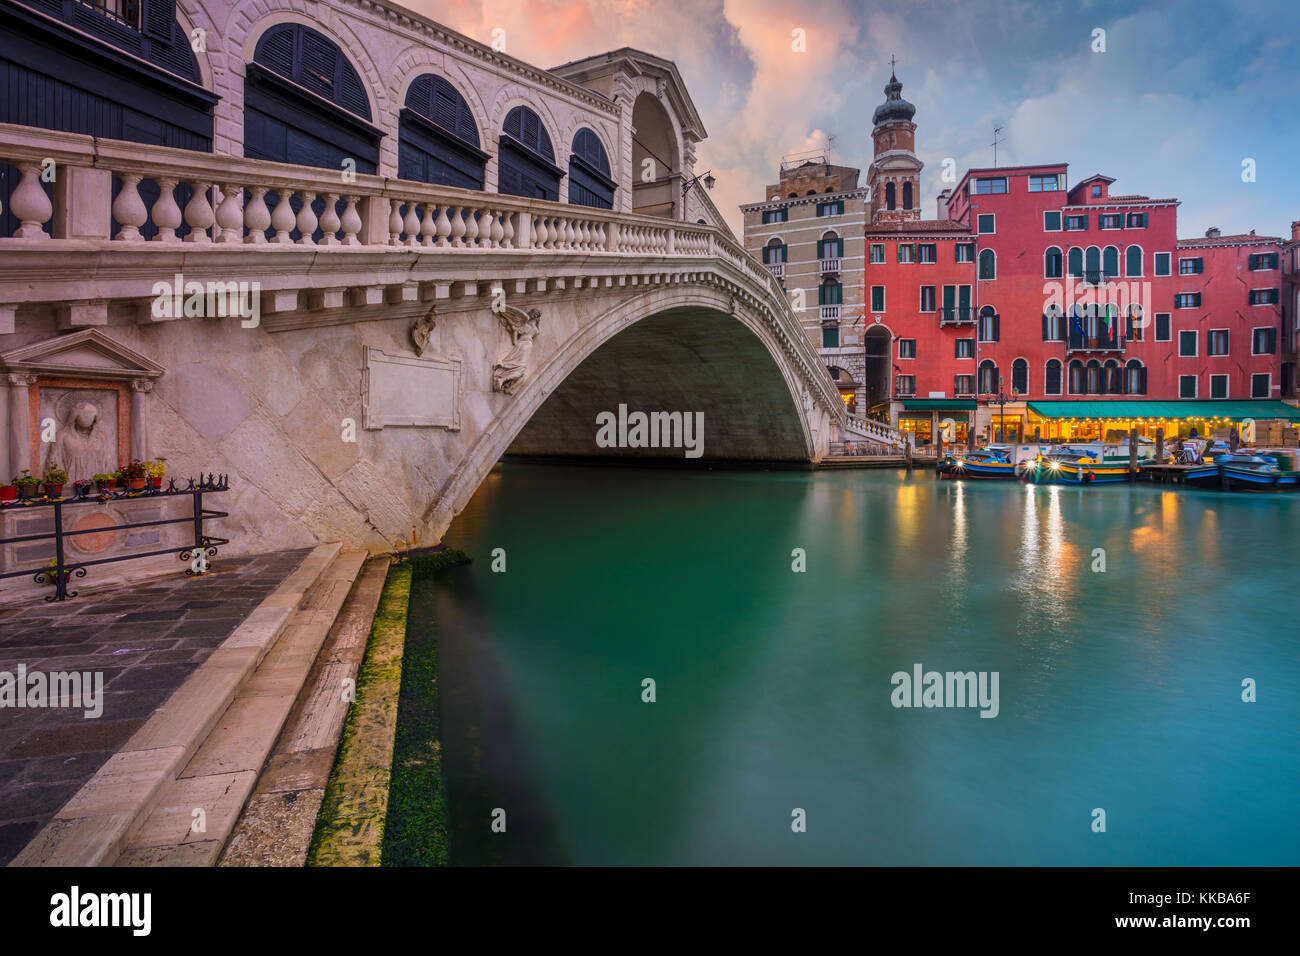 Venedig. stadtbild Bild von Venedig mit der berühmten Rialto Brücke und dem Grand Canal. Stockfoto